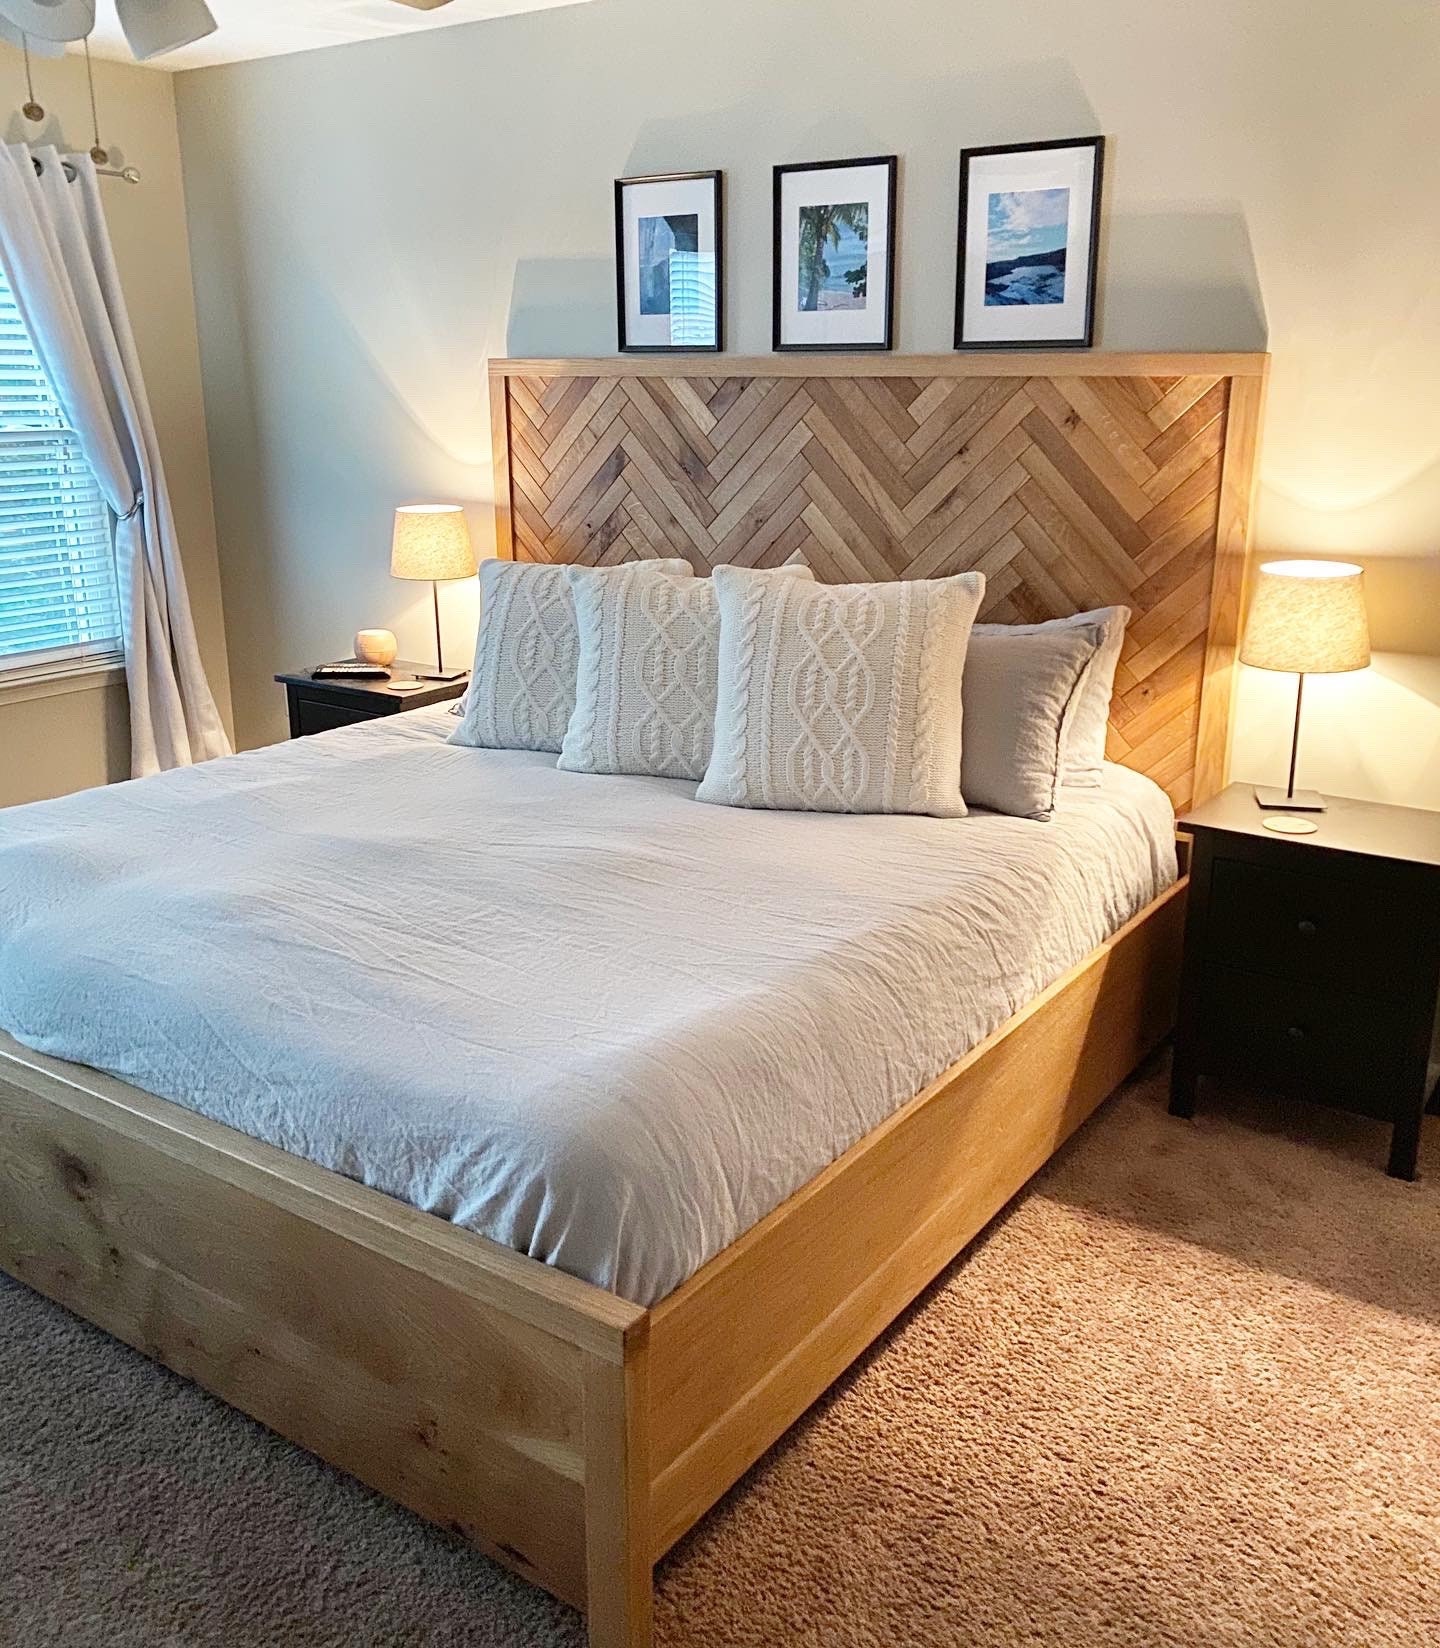 White Oak Herringbone Bed Frame, White And Oak Bed Frame